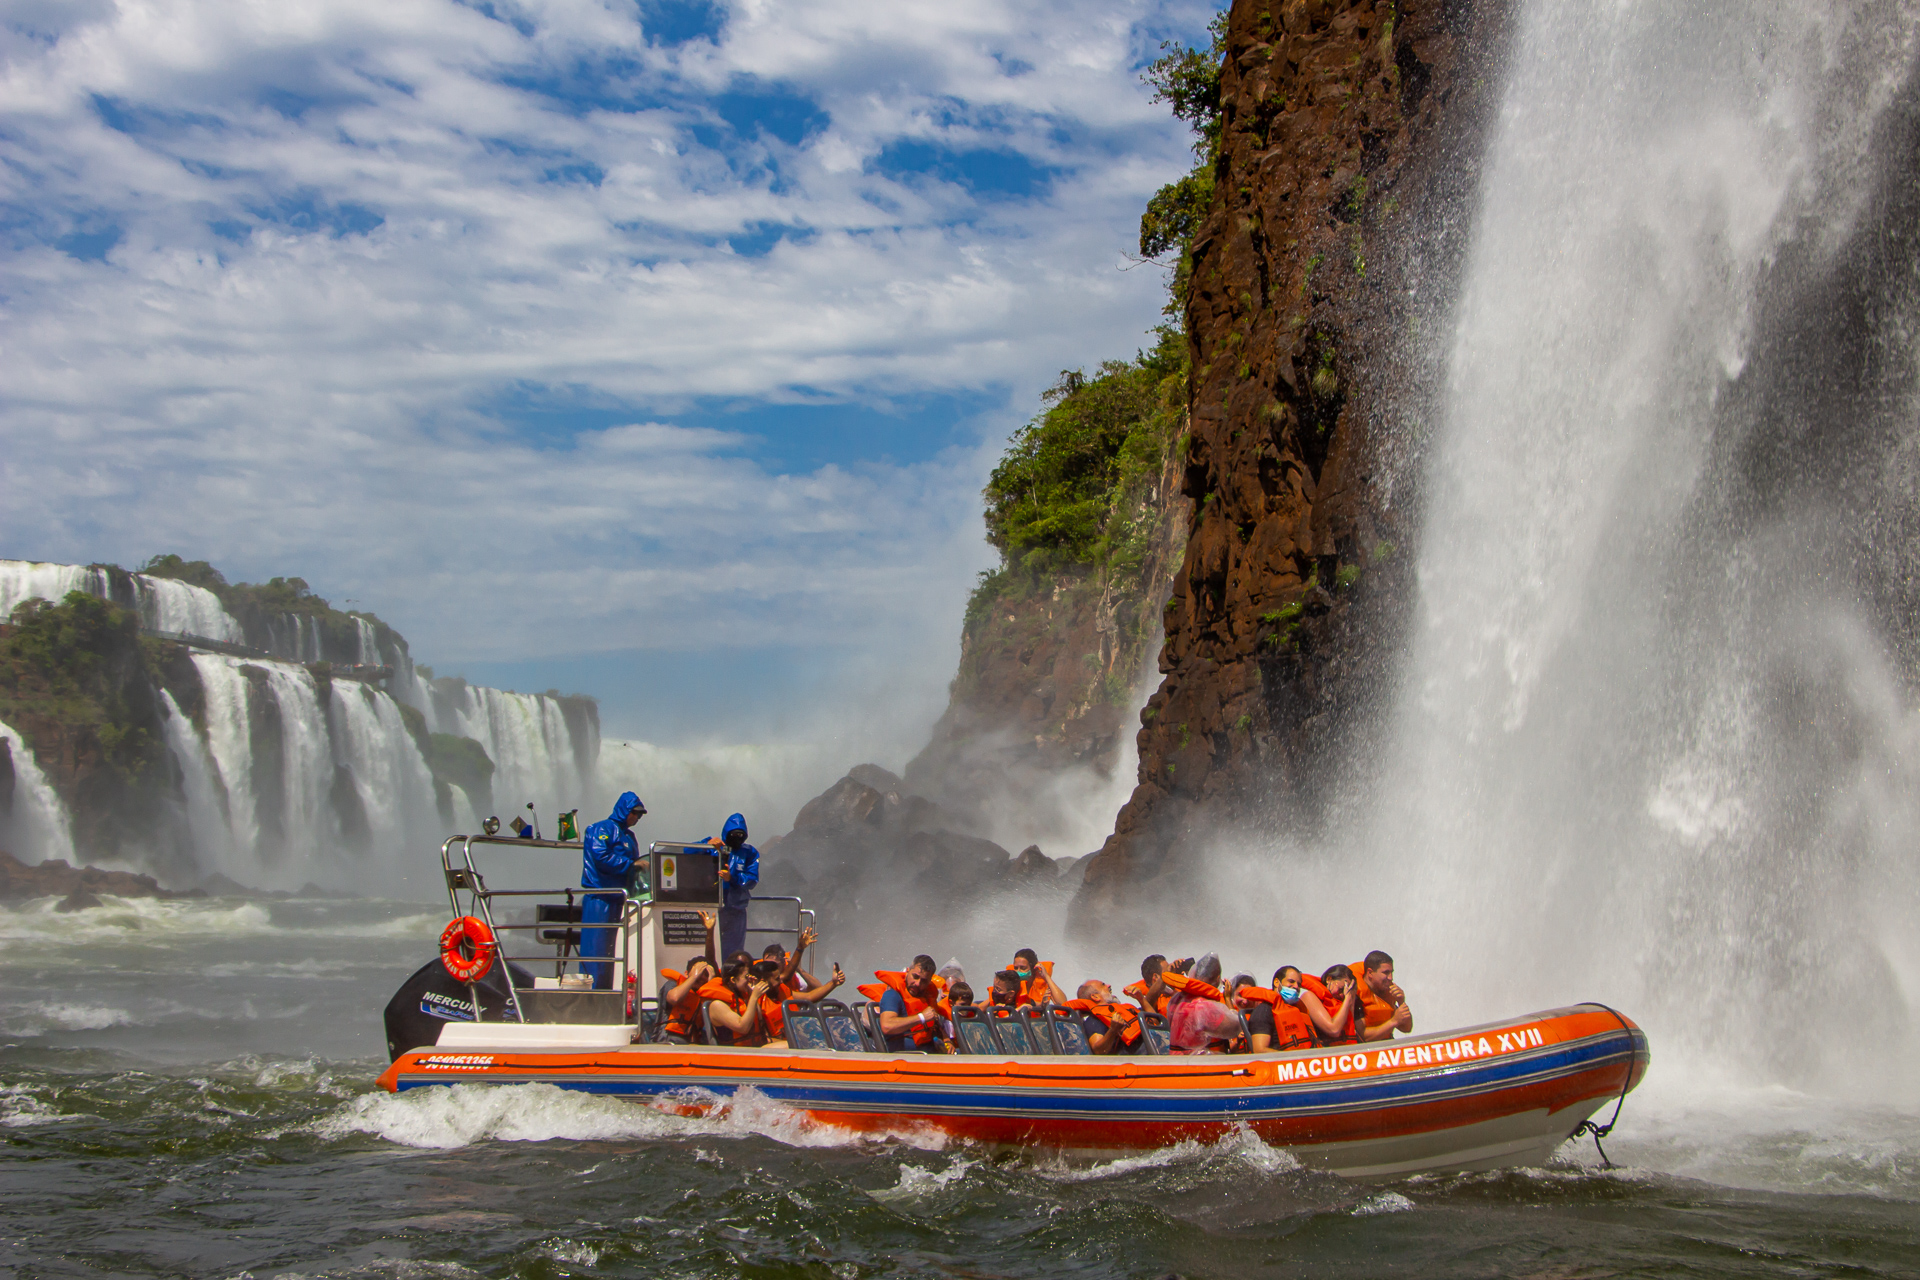 O que fazer em Foz do Iguaçu: 8 sugestões incríveis